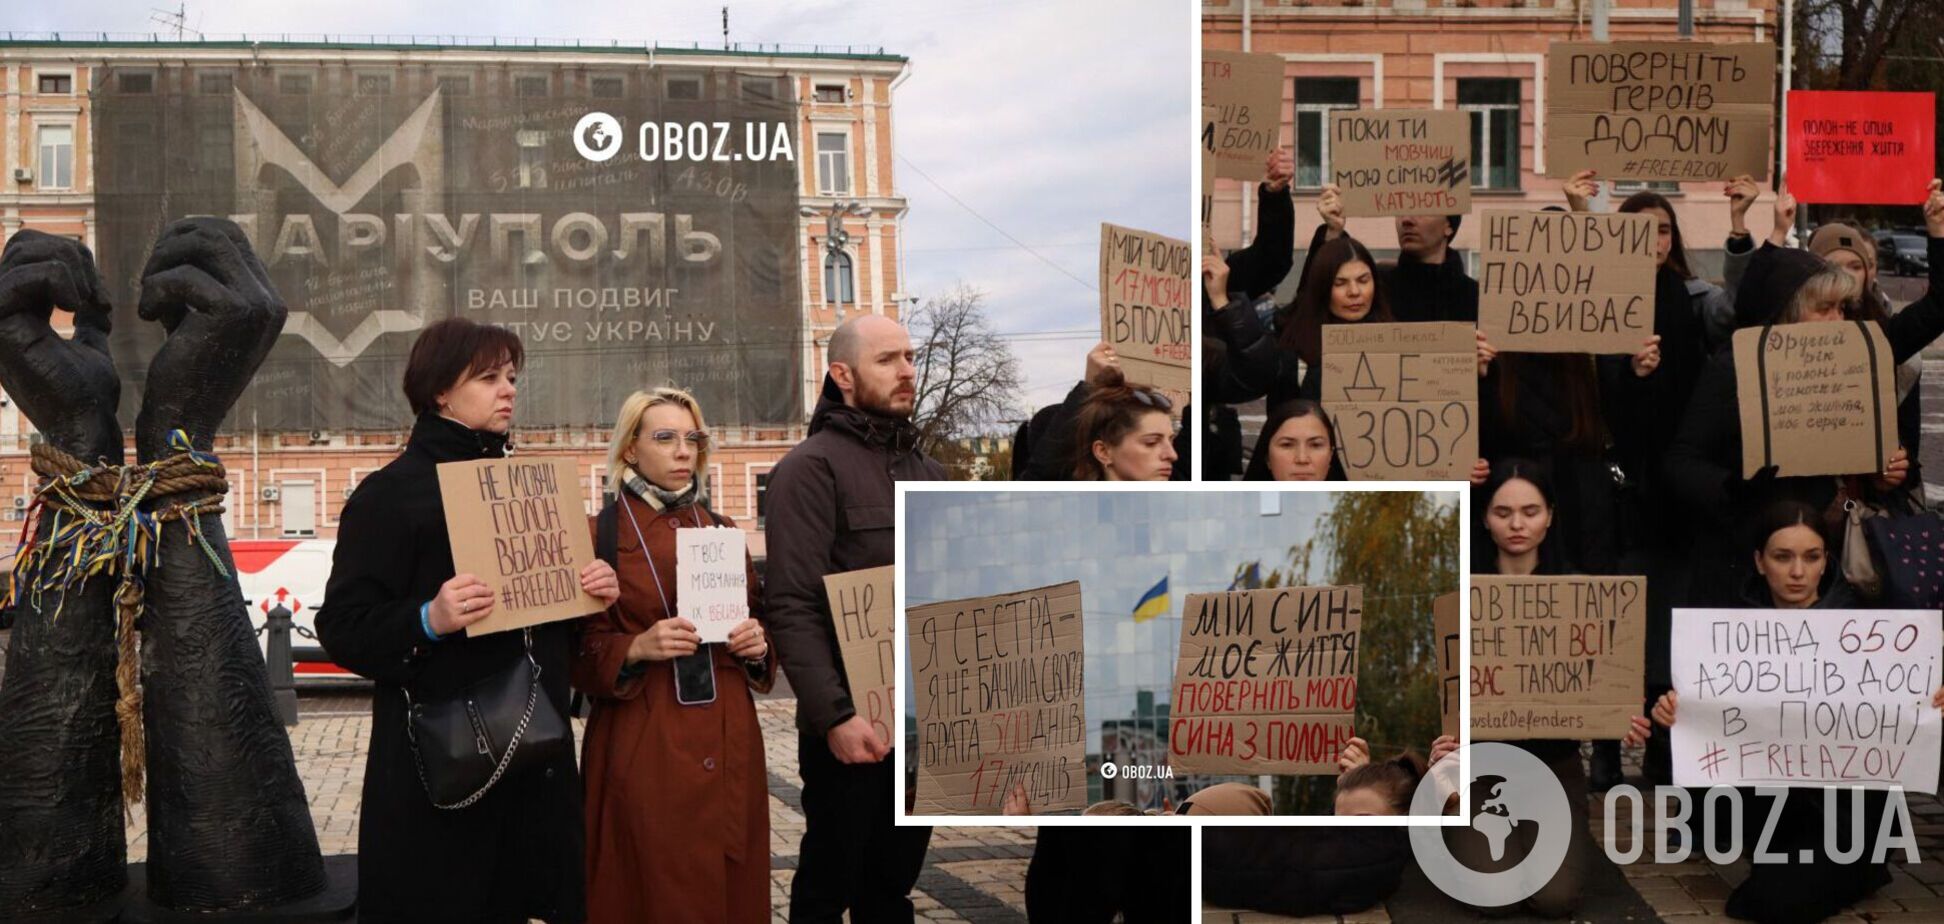 'Не молчи': в Киеве родственники защитников 'Азовстали' устроили акцию с напоминанием о пленных. Фото